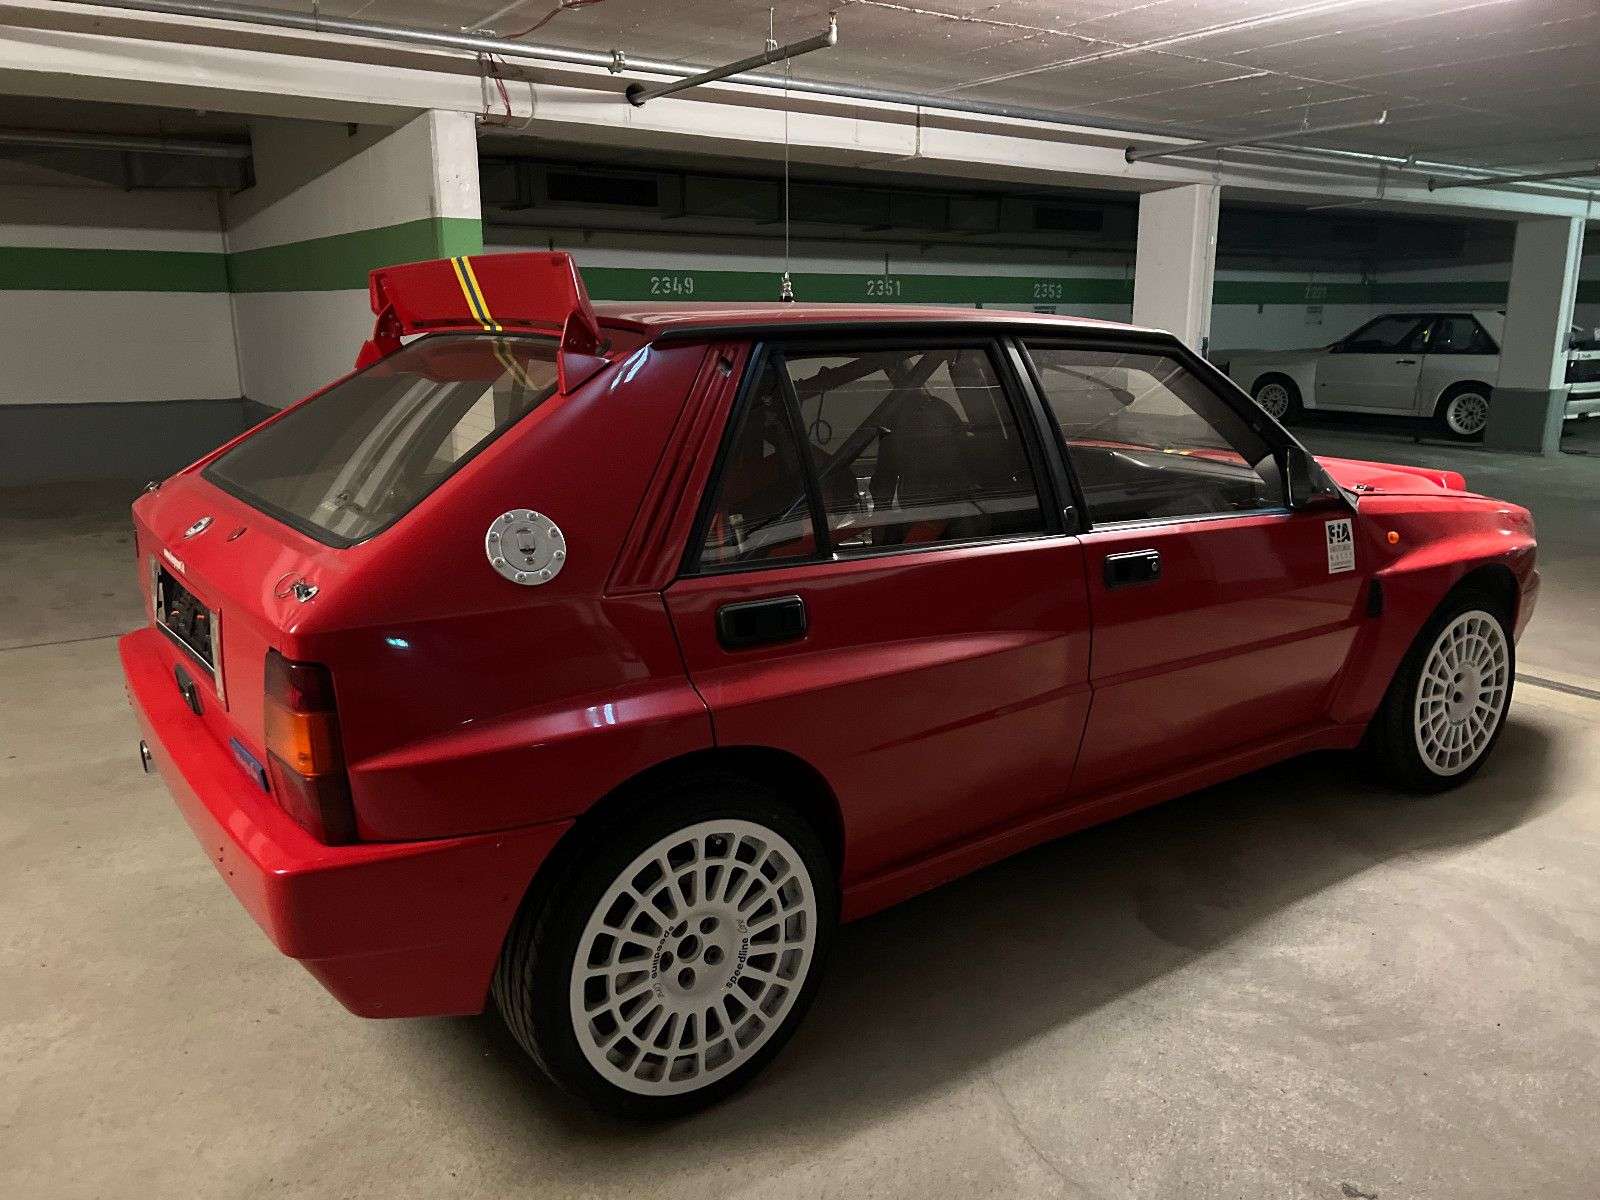 Lancia Delta Sedan in Red used in Starnberg for € 189,900.-